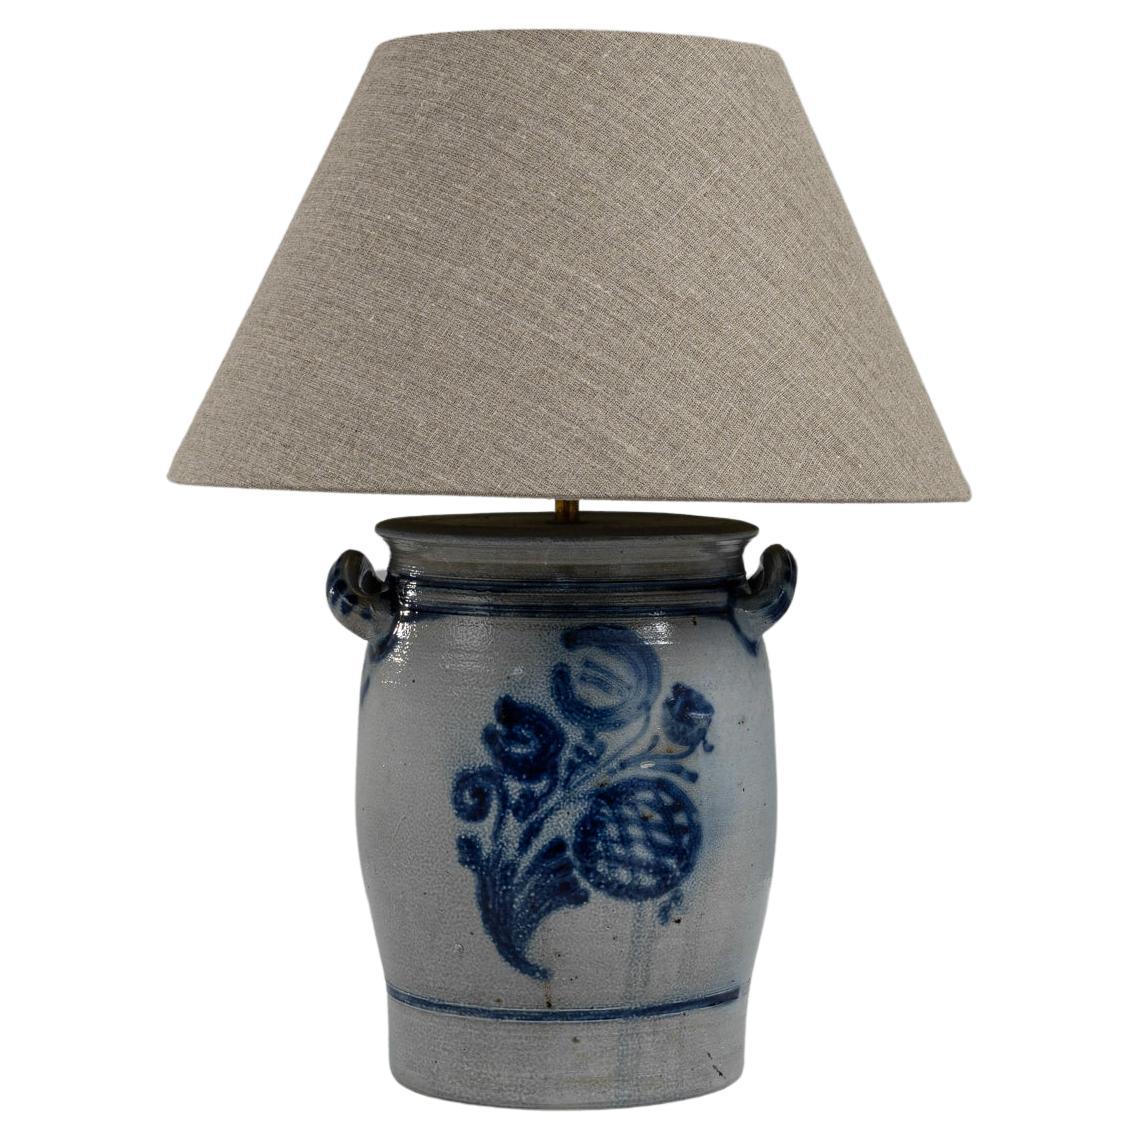 1900s Belgian Ceramic Table Lamp